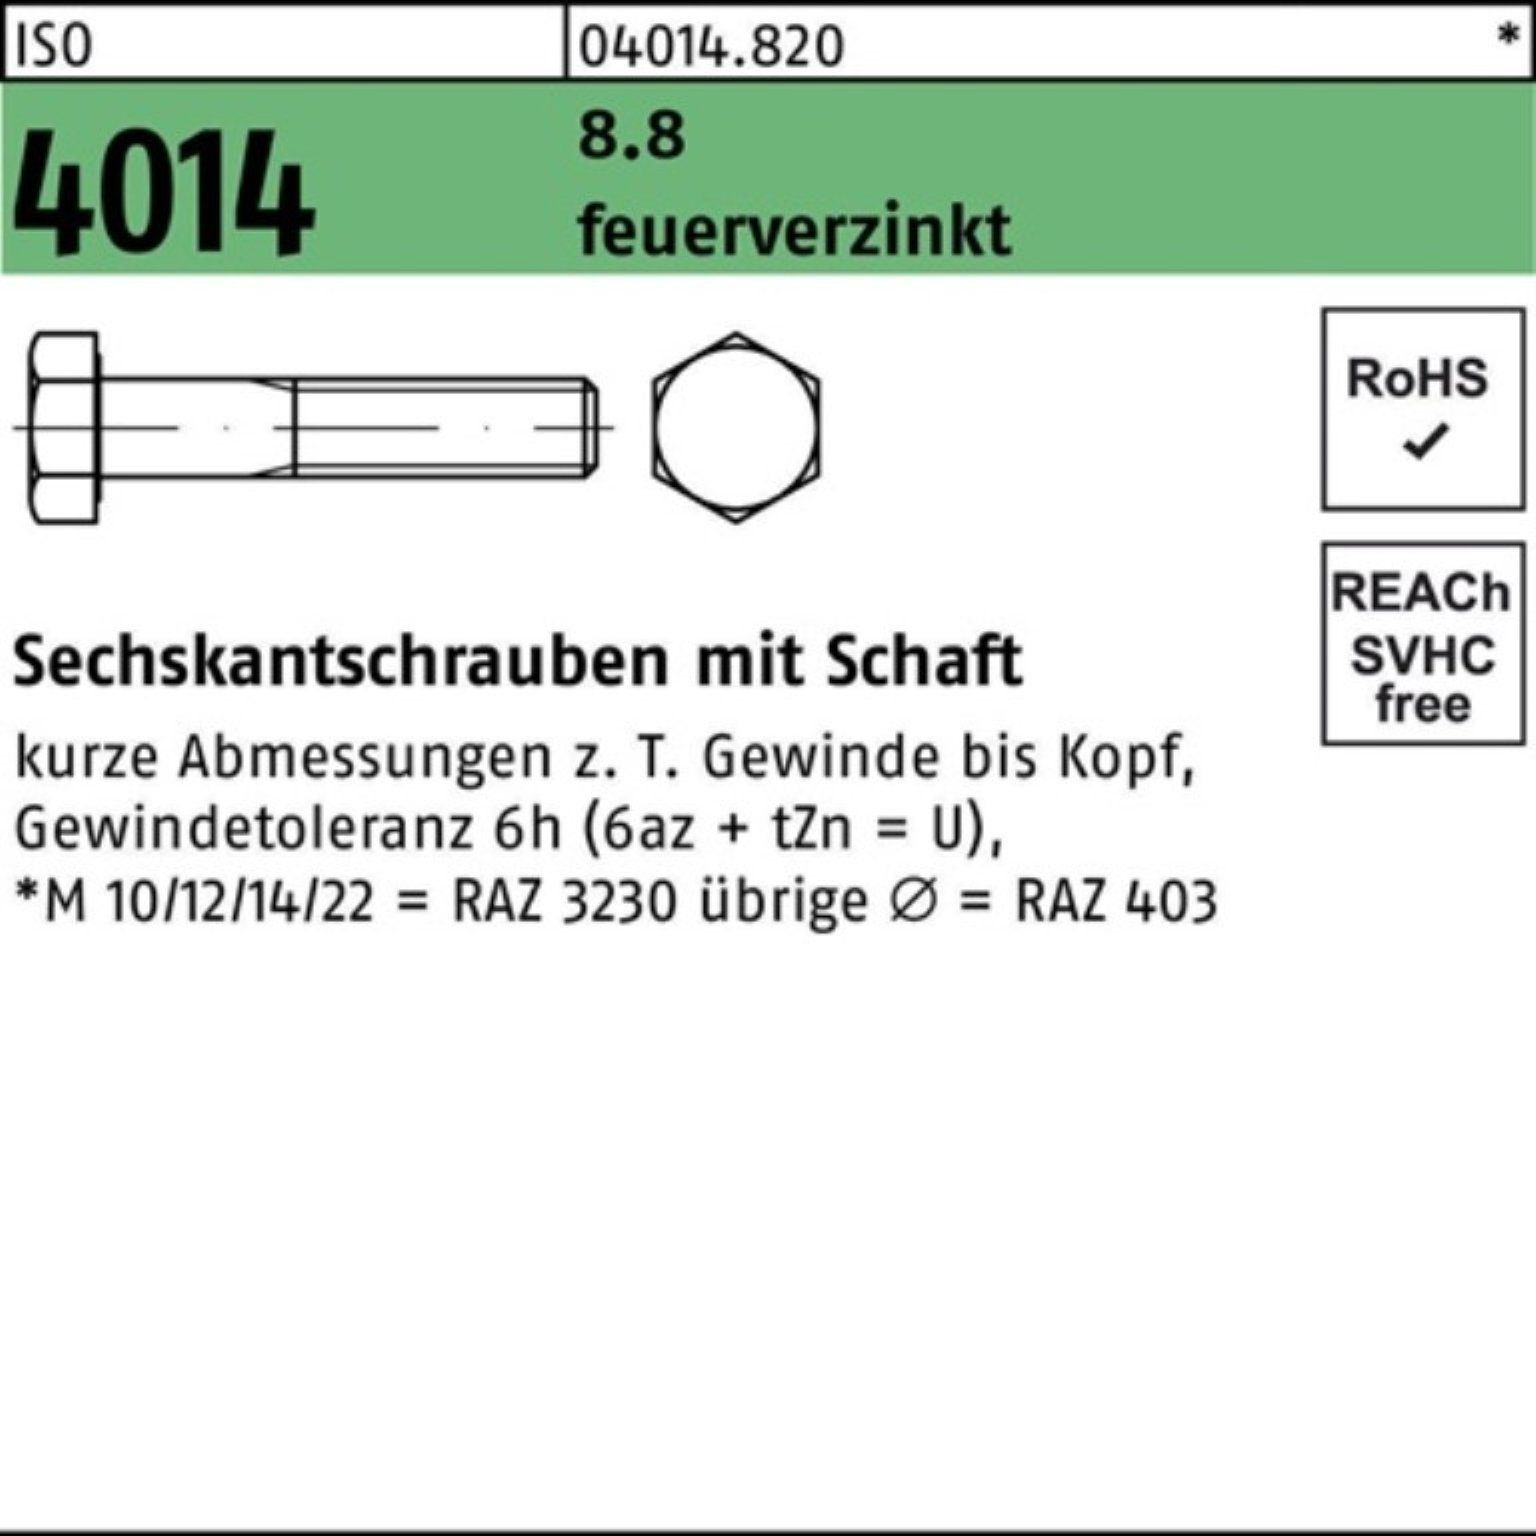 Bufab Sechskantschraube 100er Pack Sechskantschraube ISO 4014 Schaft M27x 140 8.8 feuerverz. 1